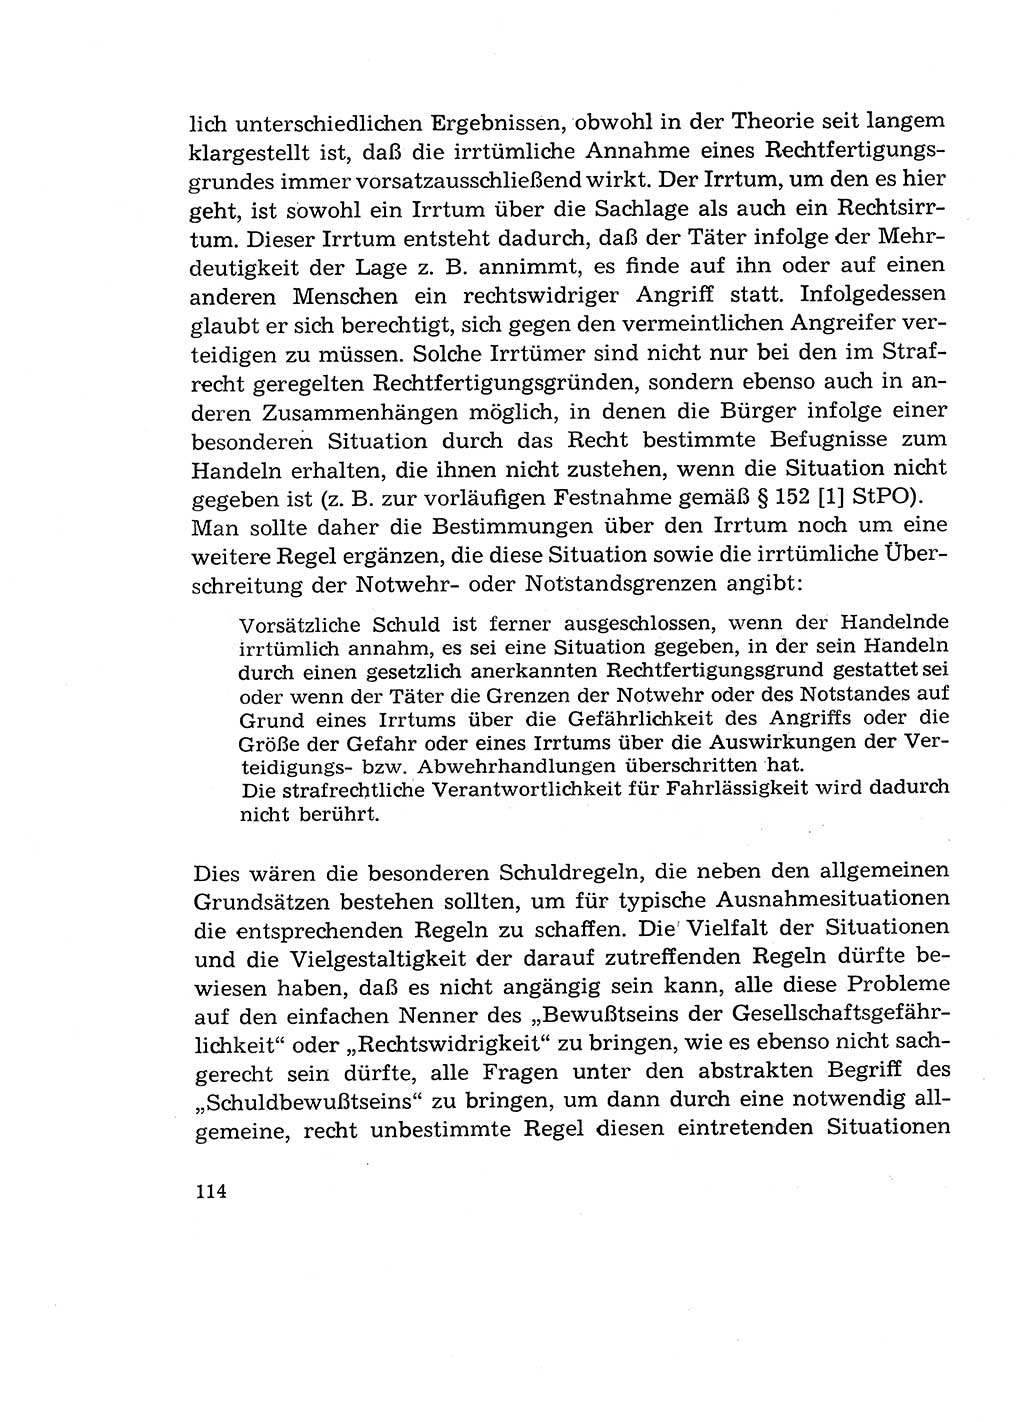 Verantwortung und Schuld im neuen Strafgesetzbuch (StGB) [Deutsche Demokratische Republik (DDR)] 1964, Seite 114 (Verantw. Sch. StGB DDR 1964, S. 114)